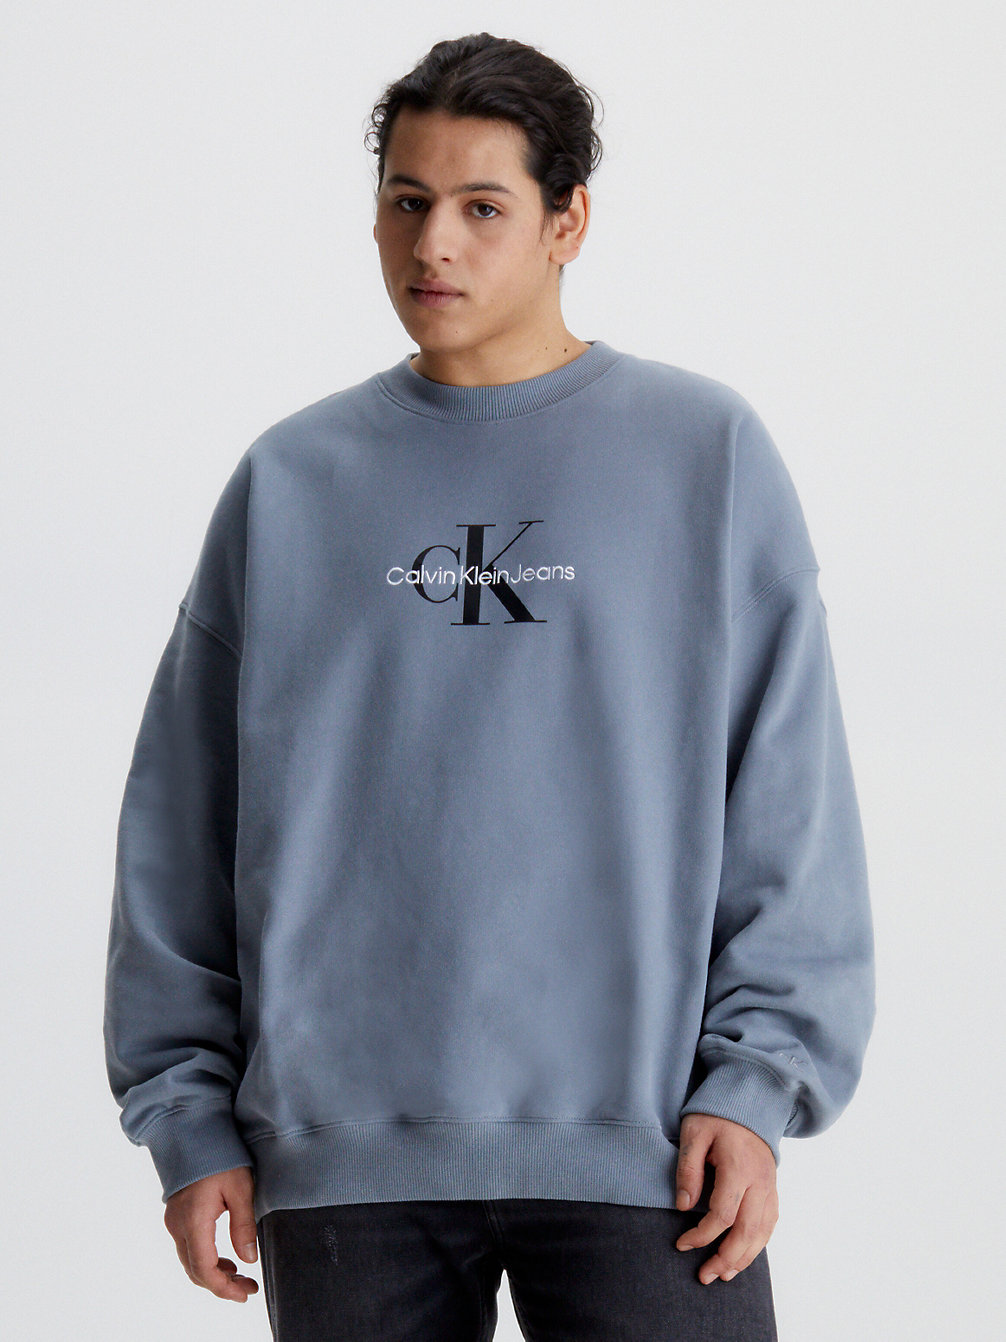 OVERCAST GREY Grote Maat Monogram Sweatshirt undefined heren Calvin Klein